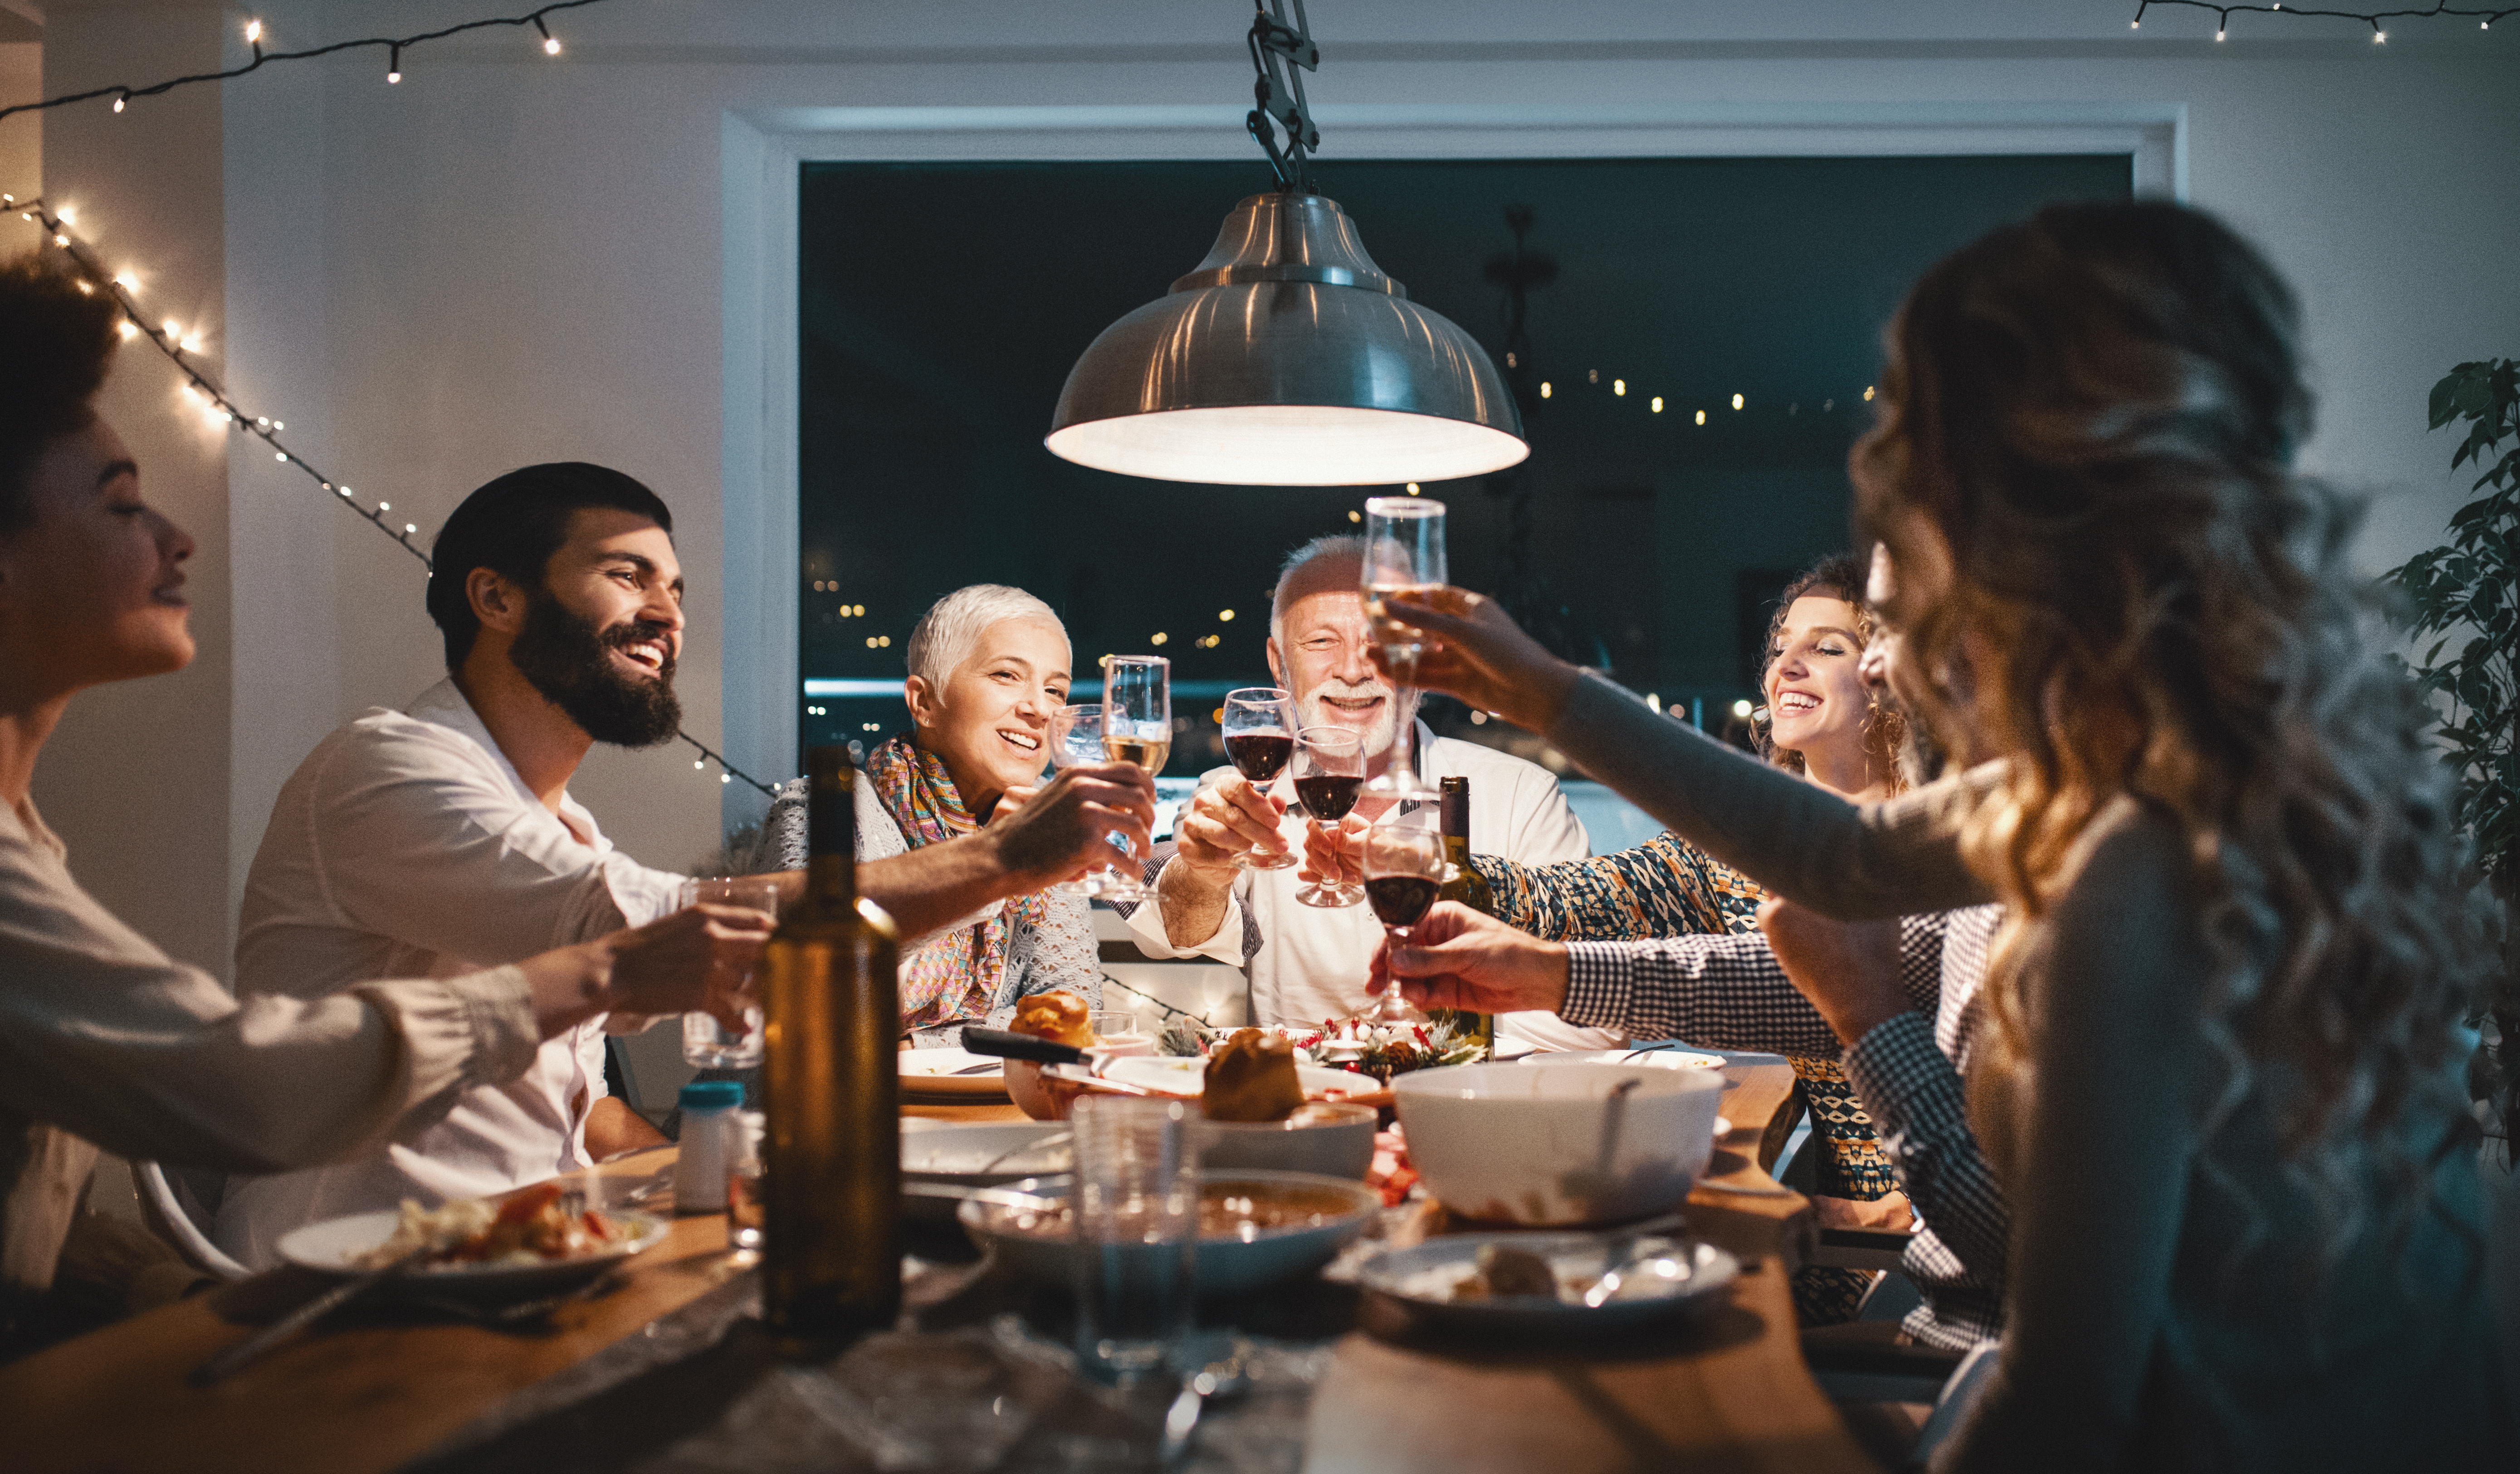 Famille en train de dîner la veille de Noël | Source : Getty Images